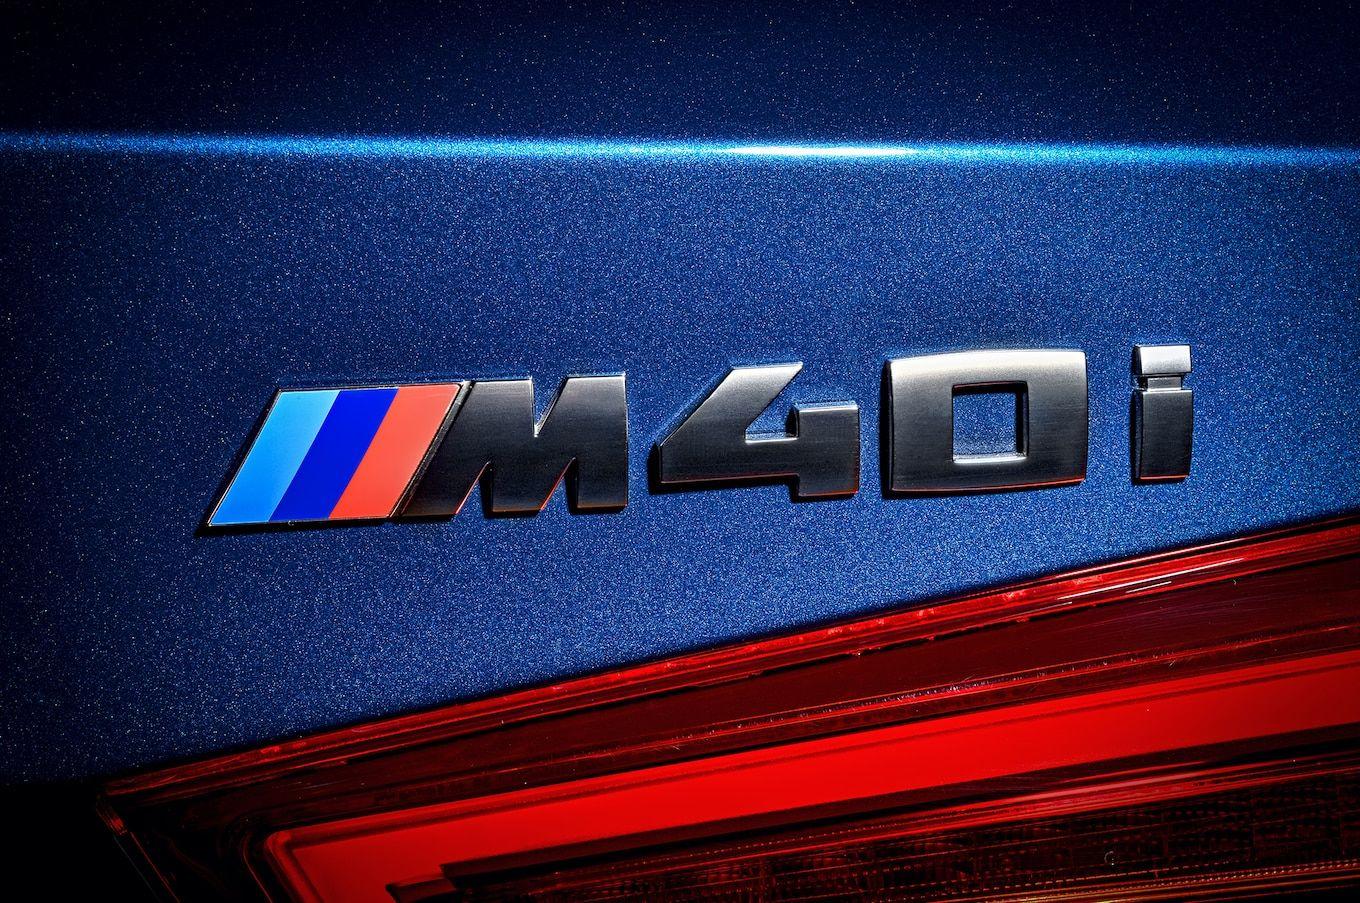 2018 BMW Logo - 2018 BMW X3 M40i logo - Motortrend